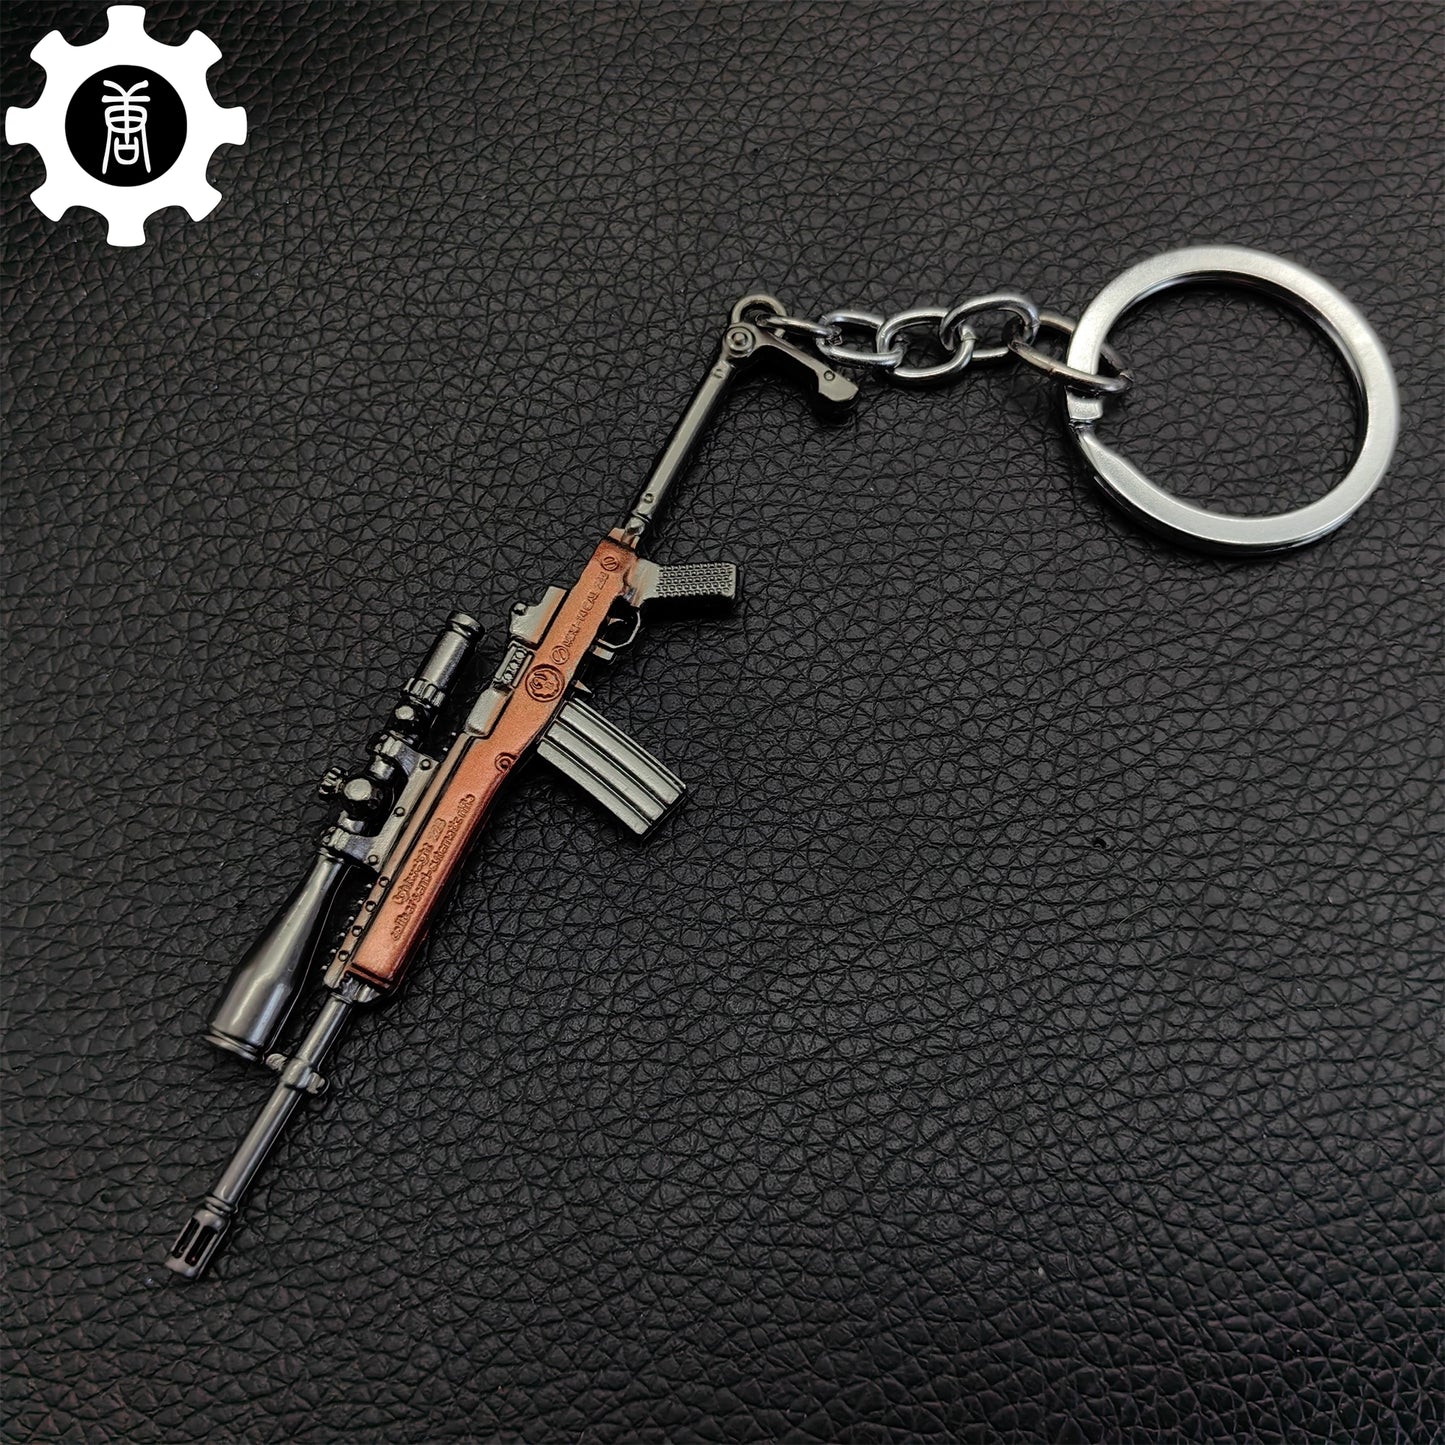 Tiny Mini 14 Sniper Rifle Metal Keychain